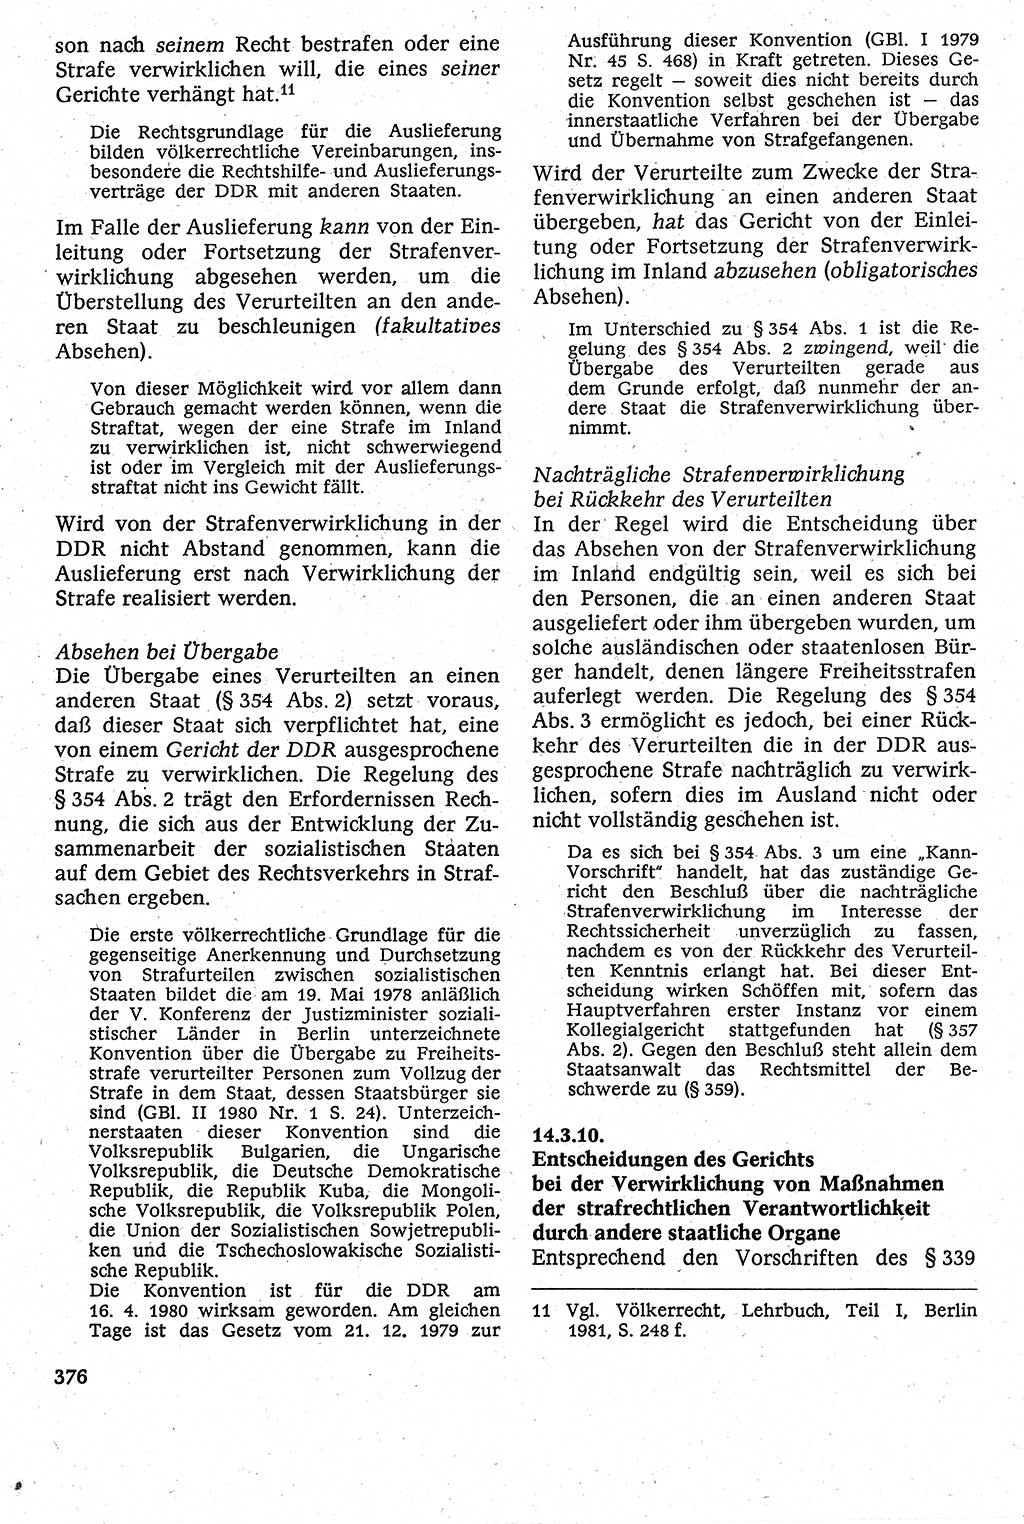 Strafverfahrensrecht [Deutsche Demokratische Republik (DDR)], Lehrbuch 1982, Seite 376 (Strafverf.-R. DDR Lb. 1982, S. 376)